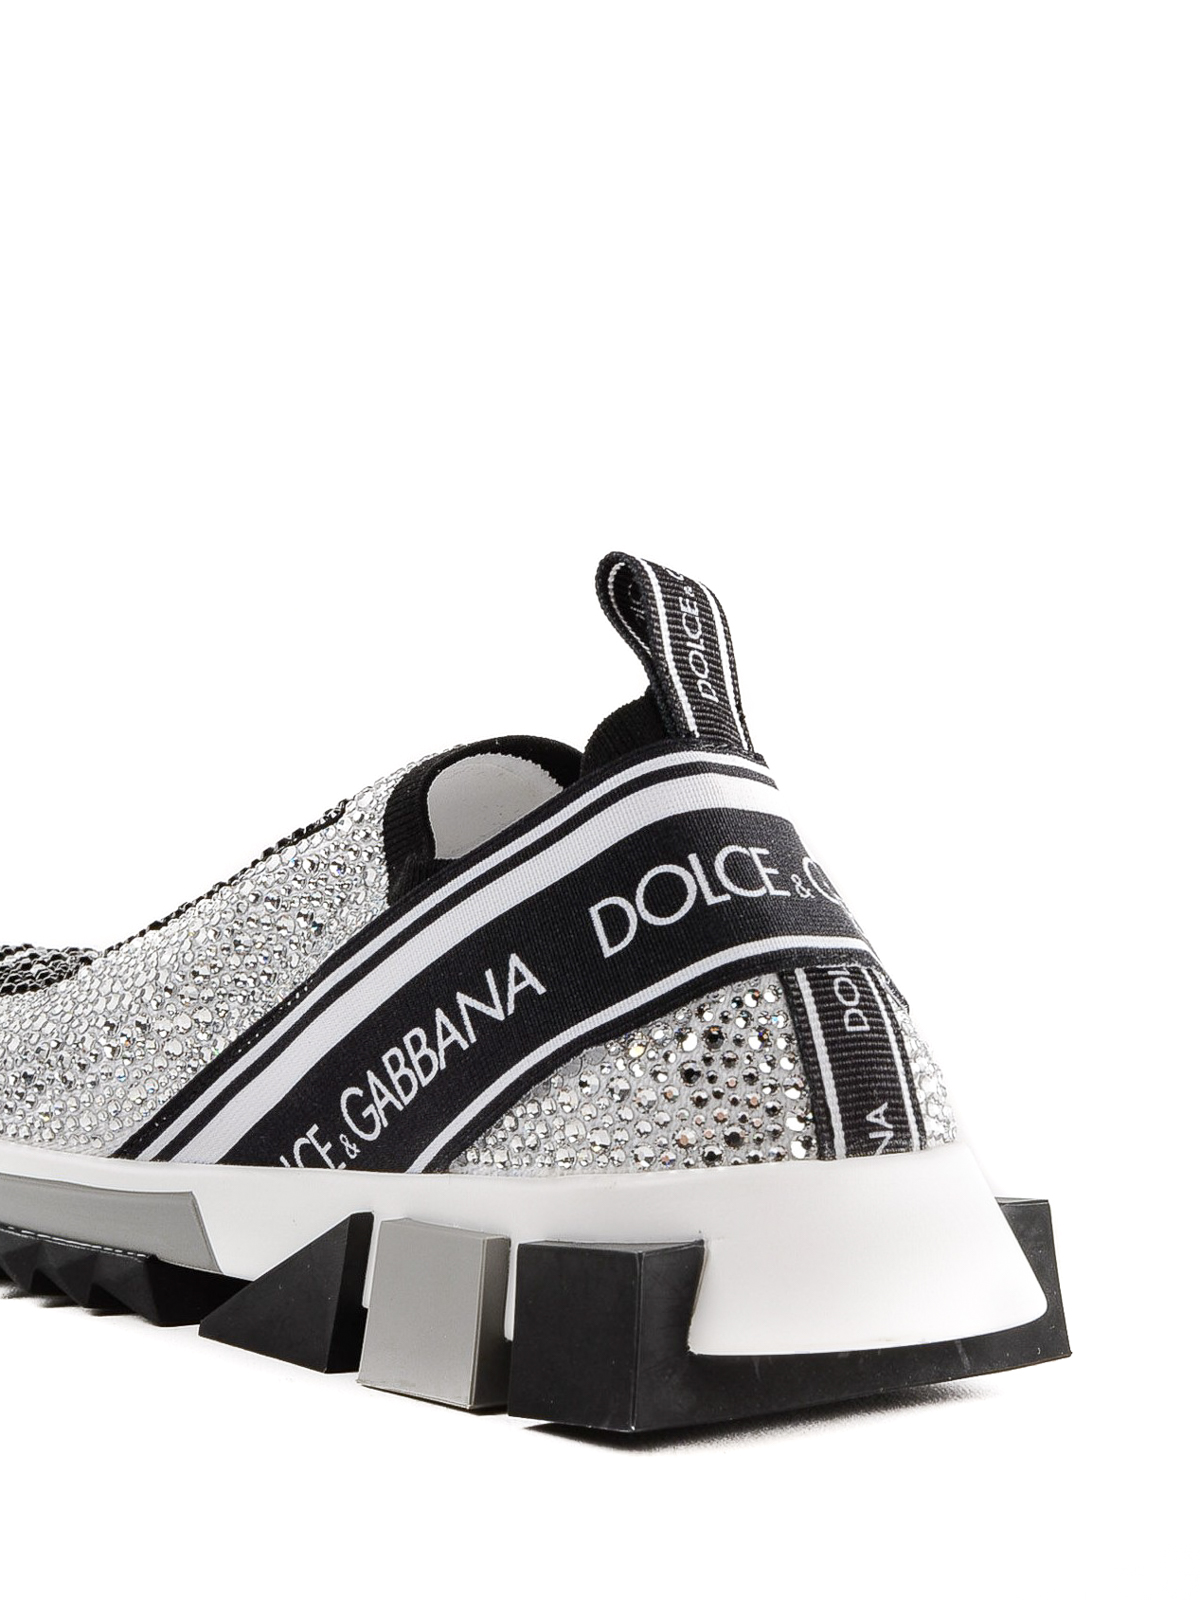 Trainers Dolce & Gabbana - Sorrento crystal embellished slip-ons -  CK1644AZ1448V135